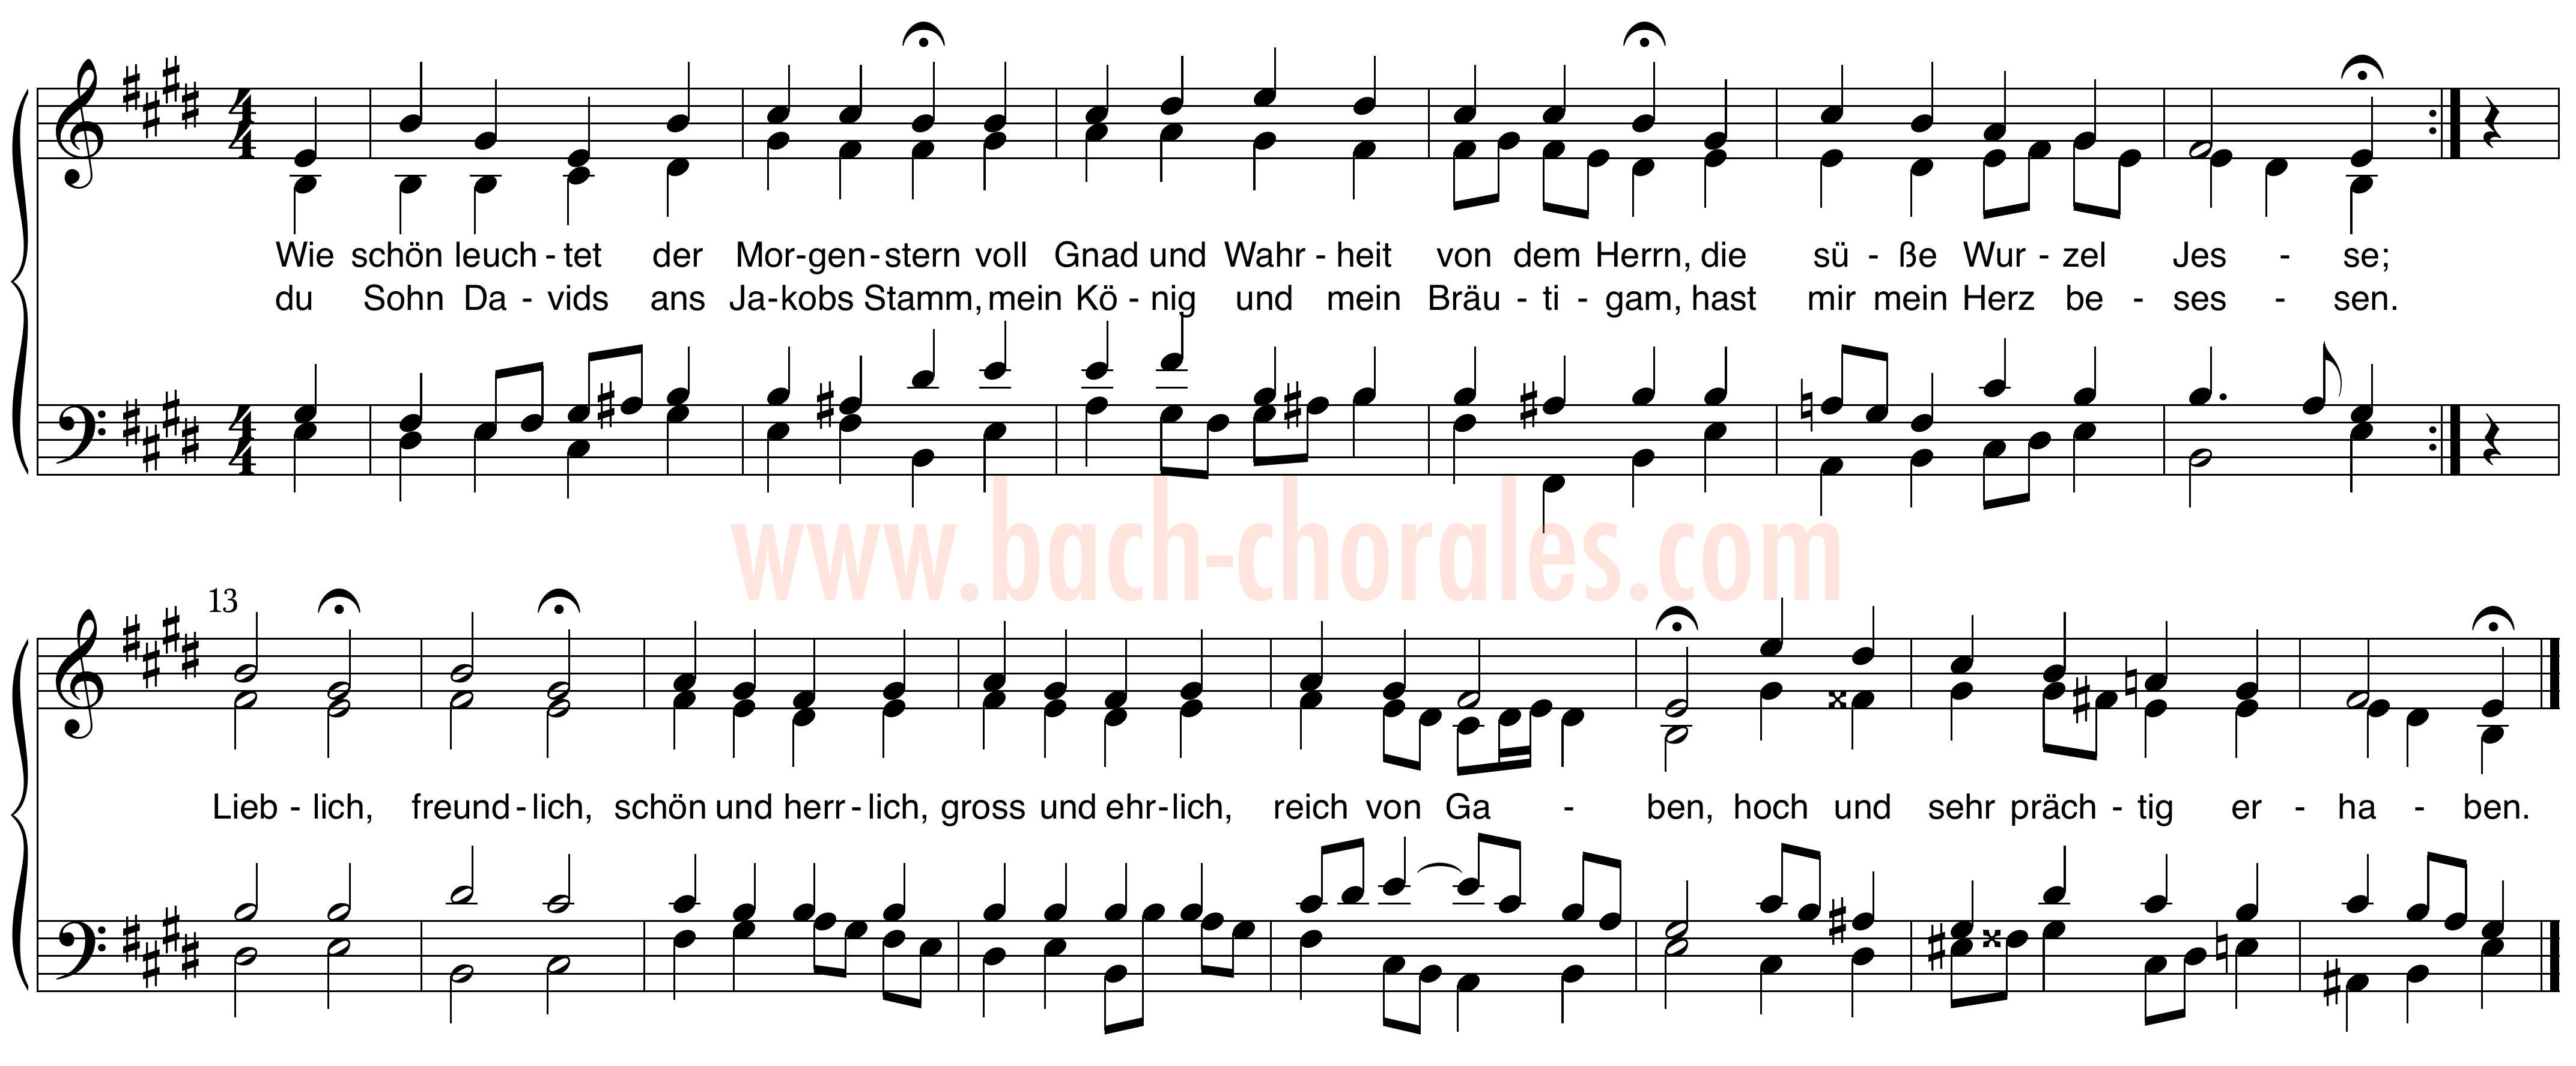 notenbeeld BWV 436 op https://www.bach-chorales.com/